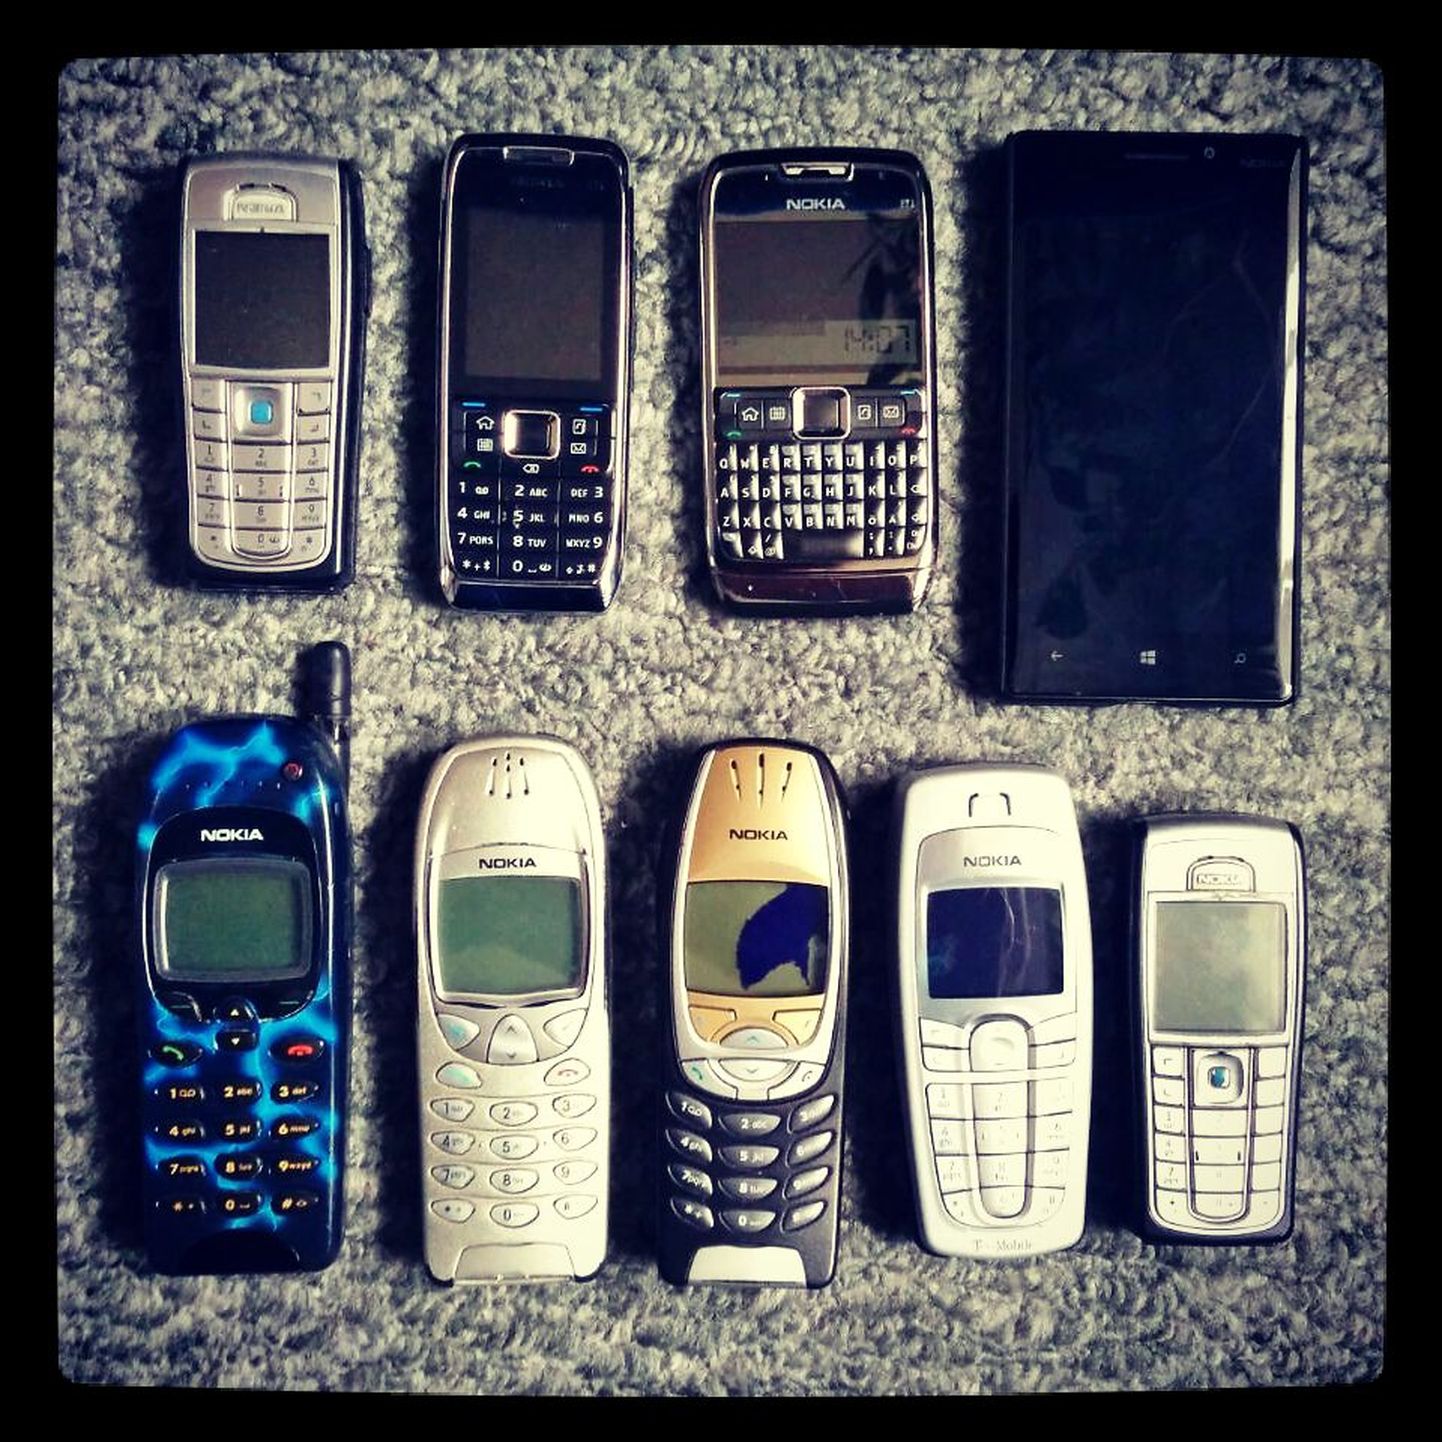 Sellelt pildilt on küll puudu see kõige esimene mobiil - Nokia "banaan" 8110 aga selle eest on pildil minu kogu järgnev Nokiate ajalugu.